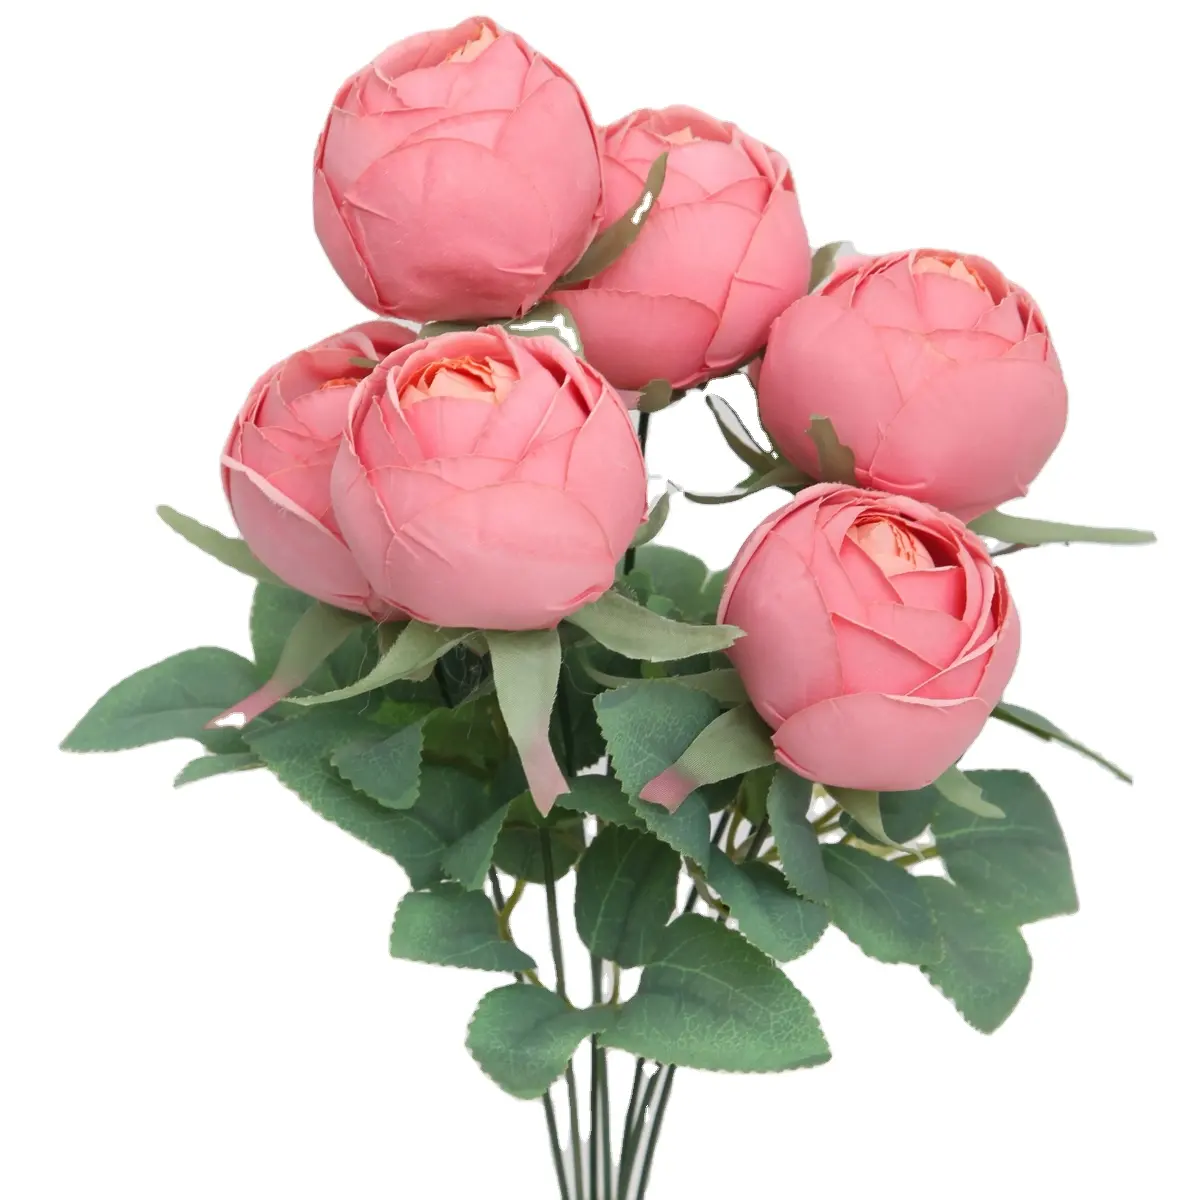 TCF silk flores Rose flores para casamento fábricas chinesas seda de alta qualidade artificiais flores decorativas e decoração plantas